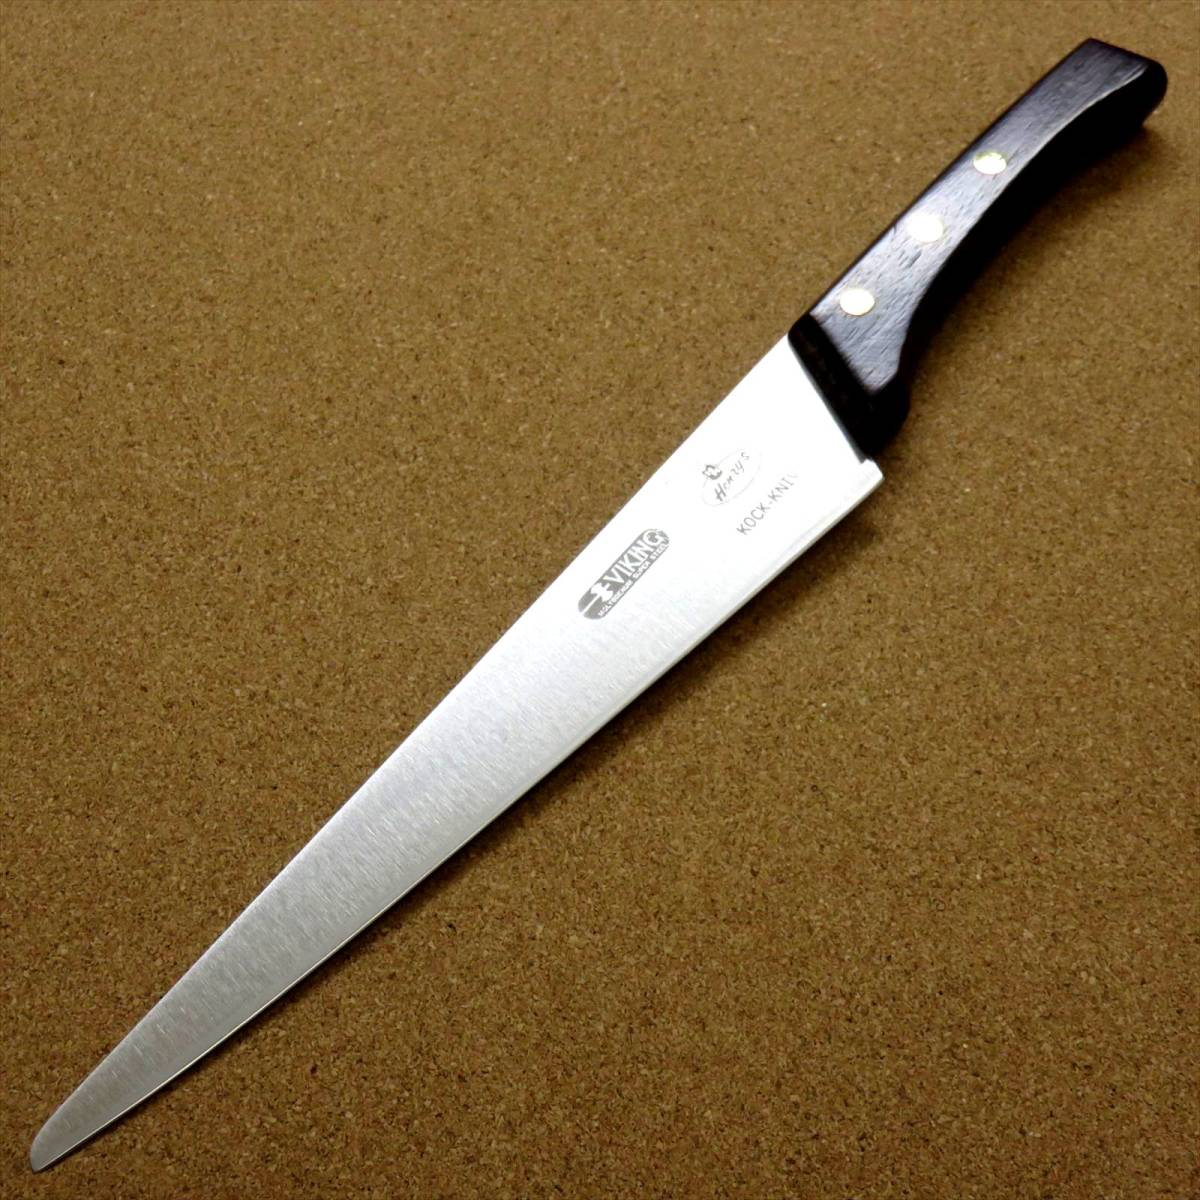 関の刃物 カービングナイフ 21.5cm (215mm) VIKING バイキング モリブデン バーベキュー 肉切包丁 両刃包丁 日本製 在庫処分品